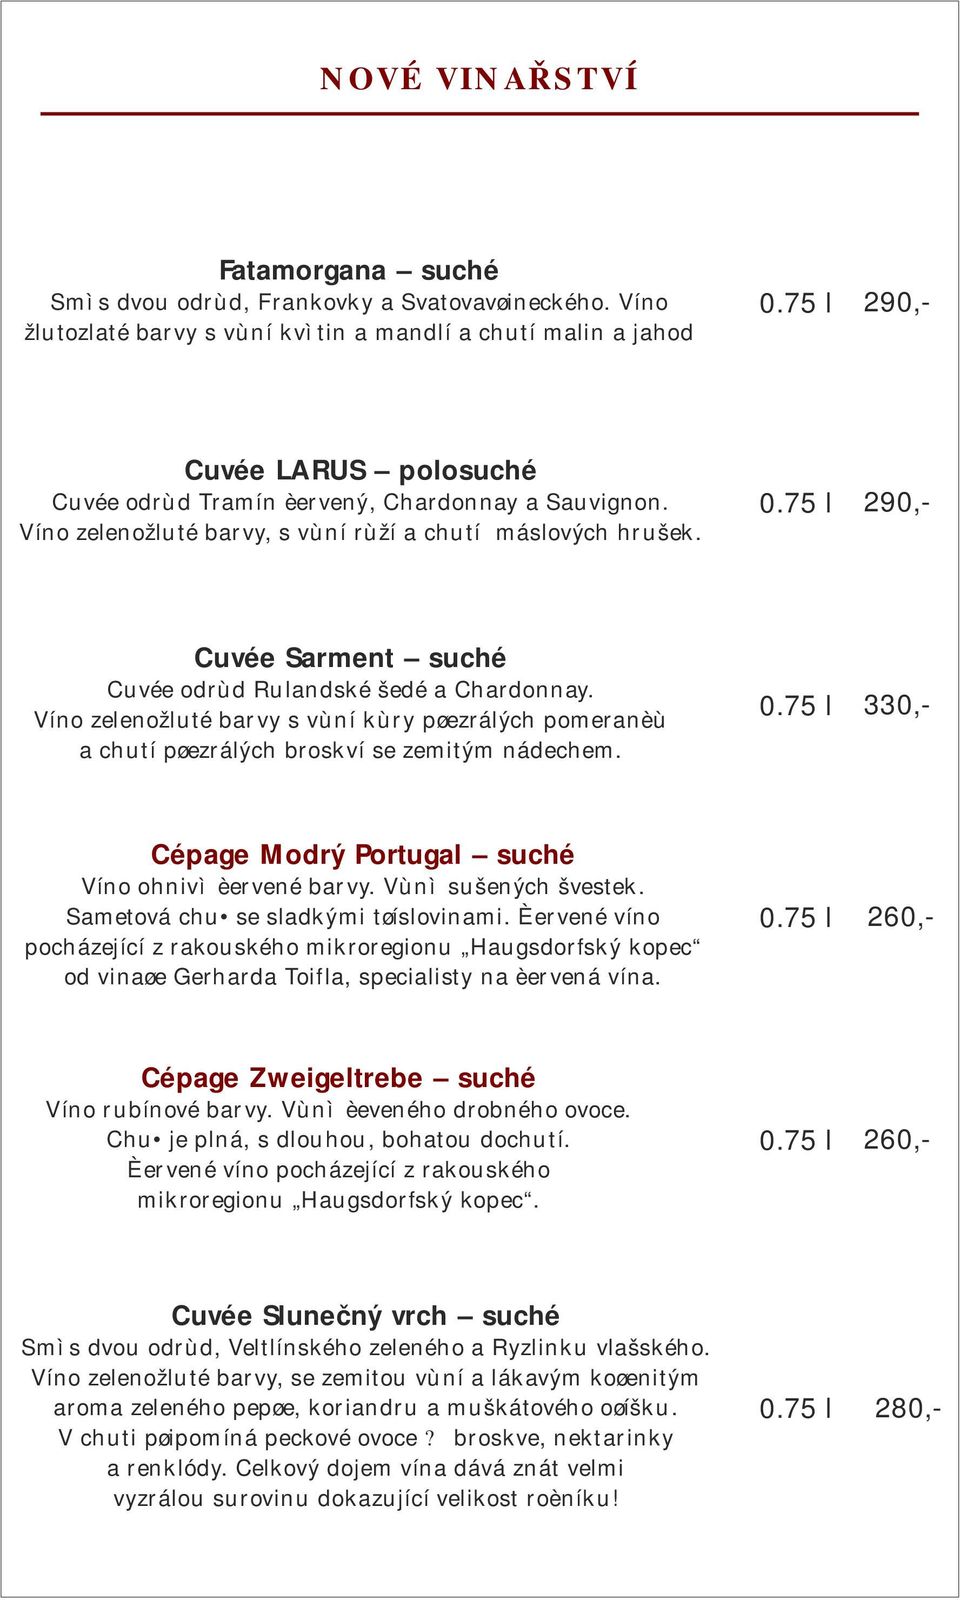 Víno zelenožluté barvy, s vùní rùží a chutí máslových hrušek. Cuvée Sarment suché Cuvée odrùd Rulandské šedé a Chardonnay.